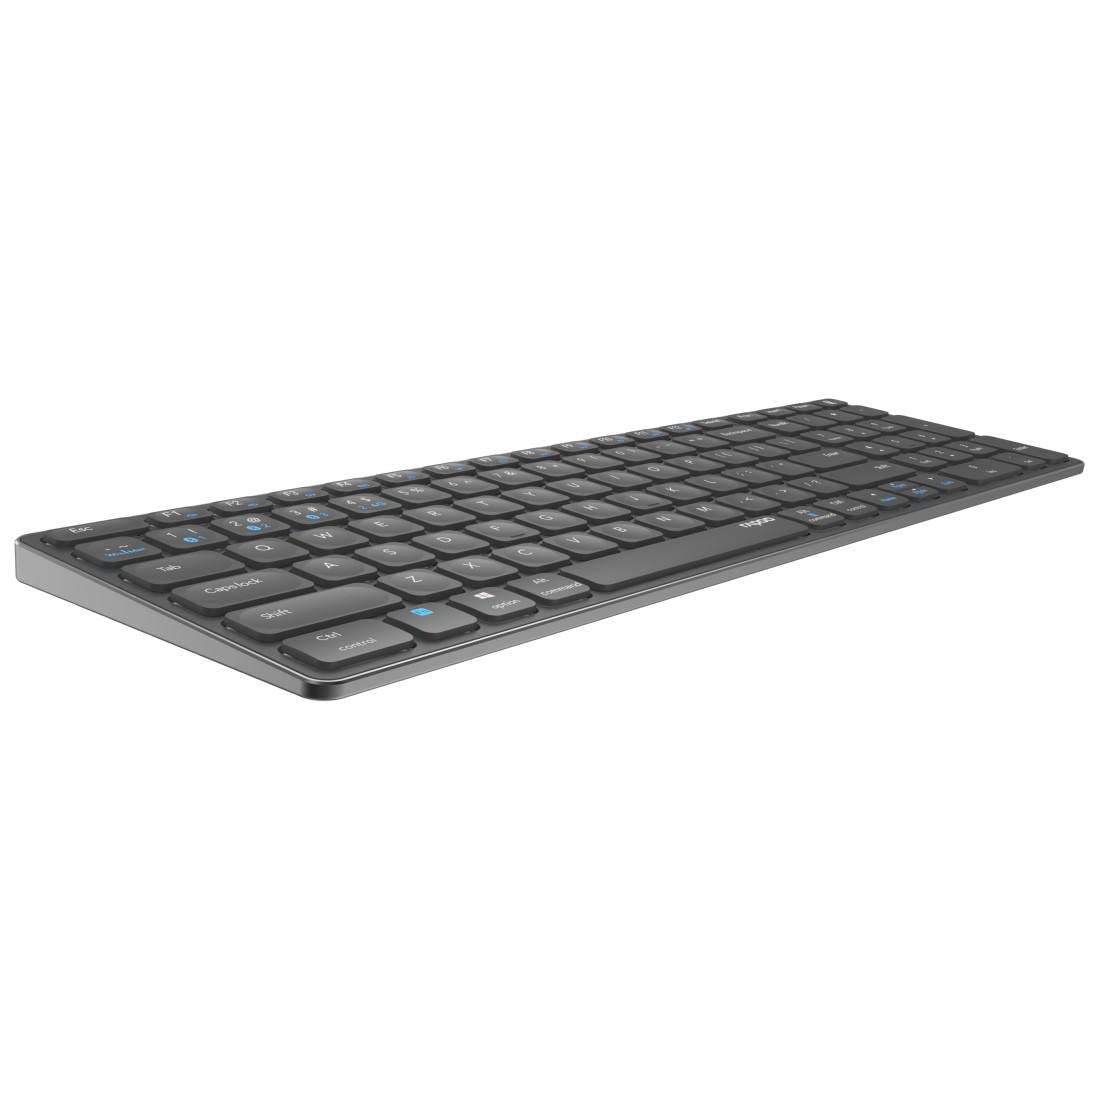 Rapoo E9700M kabellose Tastatur wireless Keyboard flaches Aluminium Design umweltfreundlicher wiederaufladbarer Akku DE-Layout QWERTZ PC & Mac - dark grey